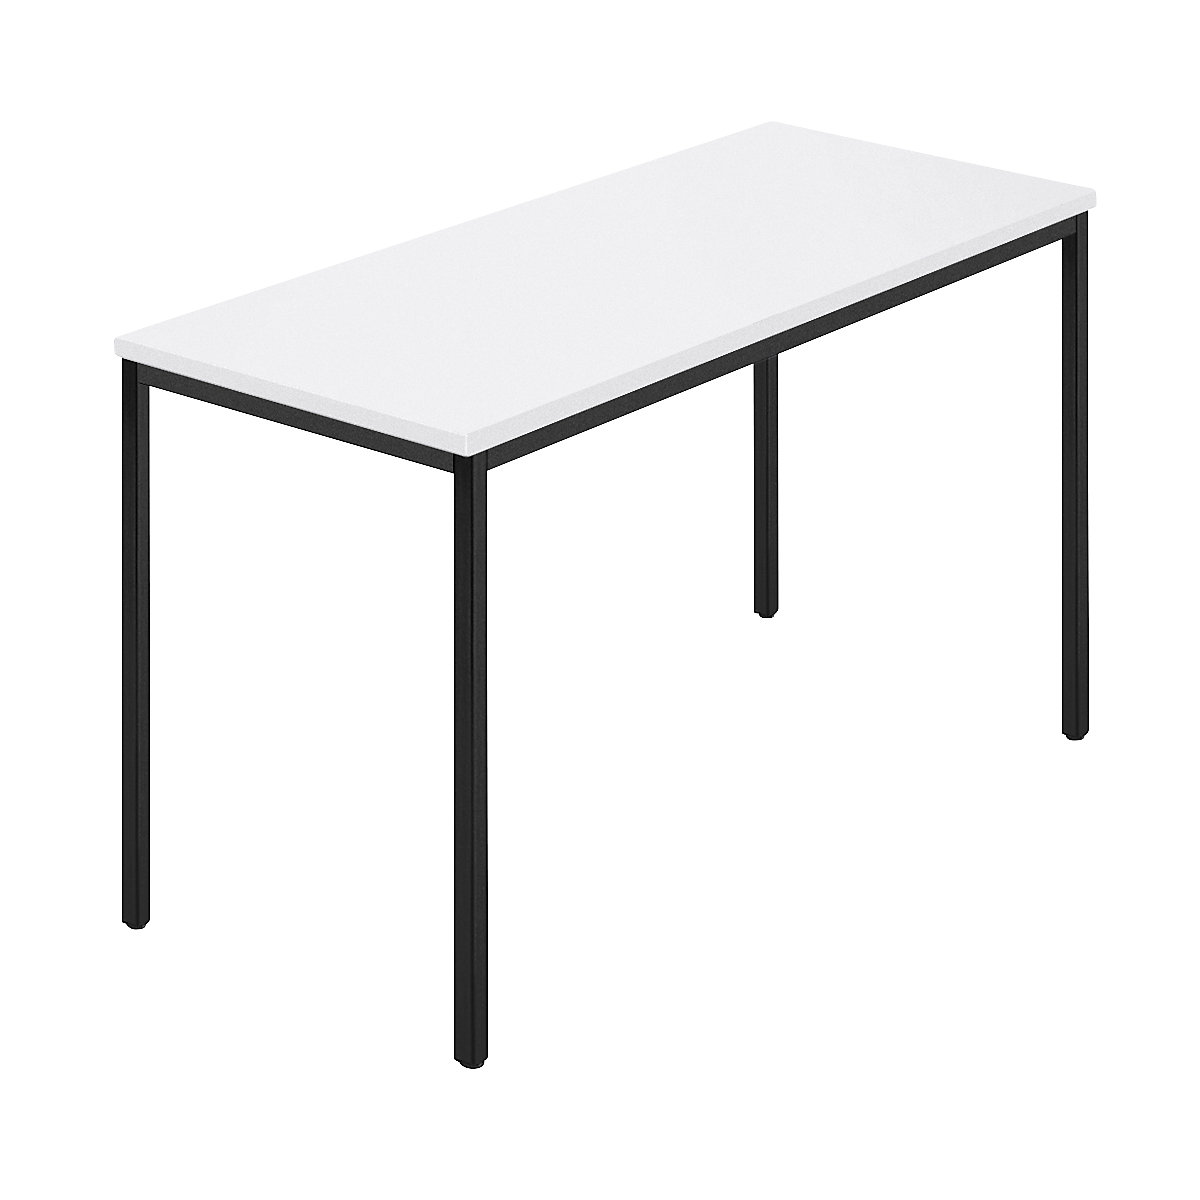 Table rectangulaire, tube carré plastifié, l x p 1200 x 600 mm, blanc / anthracite-6